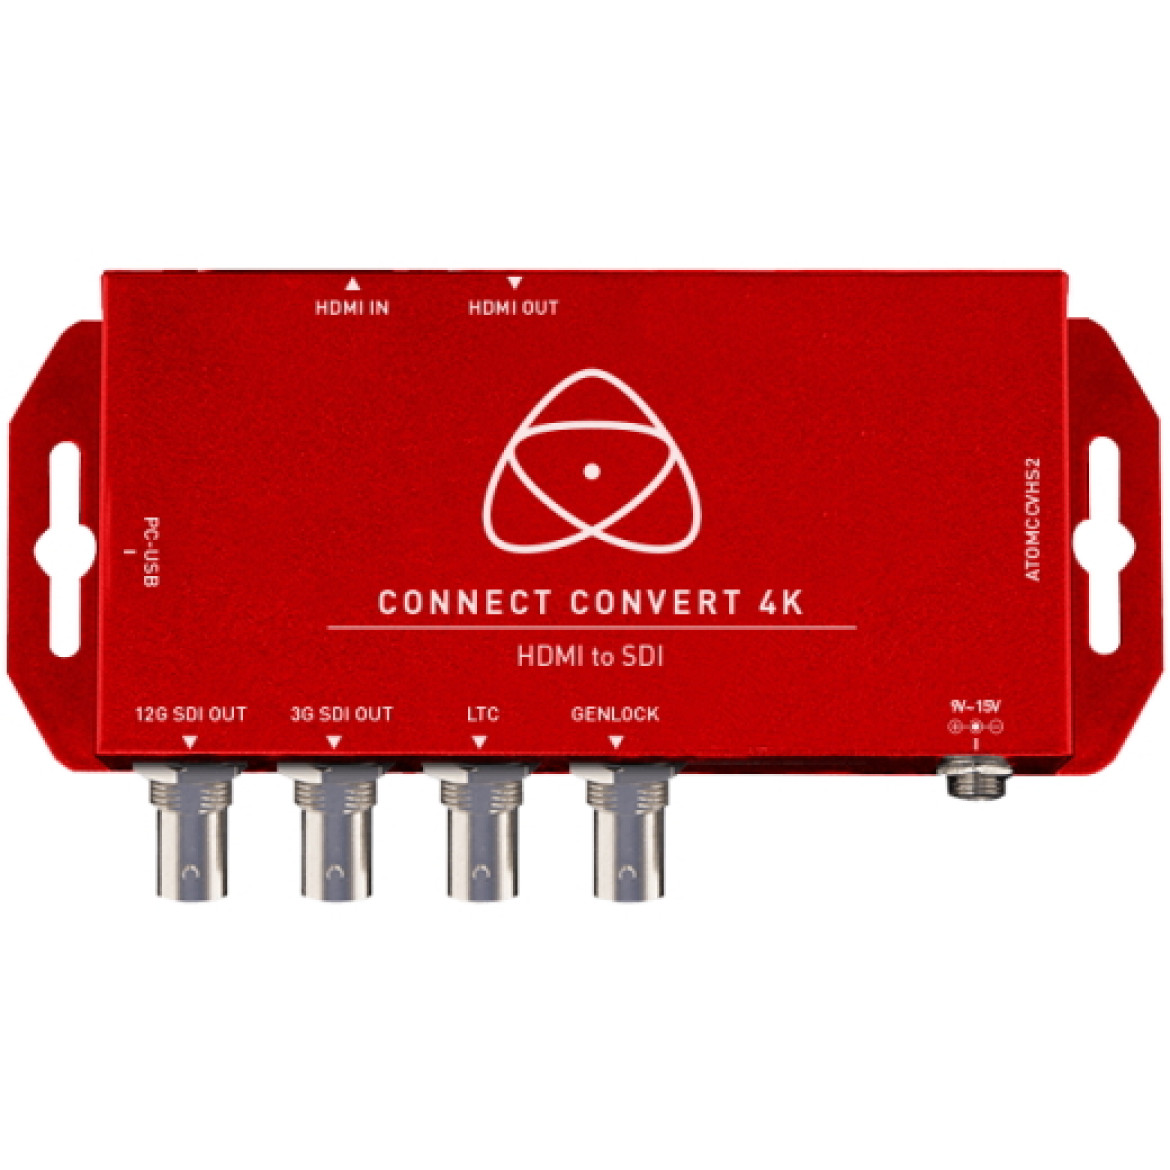 Atomos Connect Converter ATOMCCVHS2 - skaluje do 4Kp60 przy konwersji HDMI 2.0 na 12G-SDI i zapętlanie HDMI. Skalowanie góra/dół i osadzanie Timecode, Audio i WFM do wyświetlania na dowolnym monitorze HDMI / SDI.